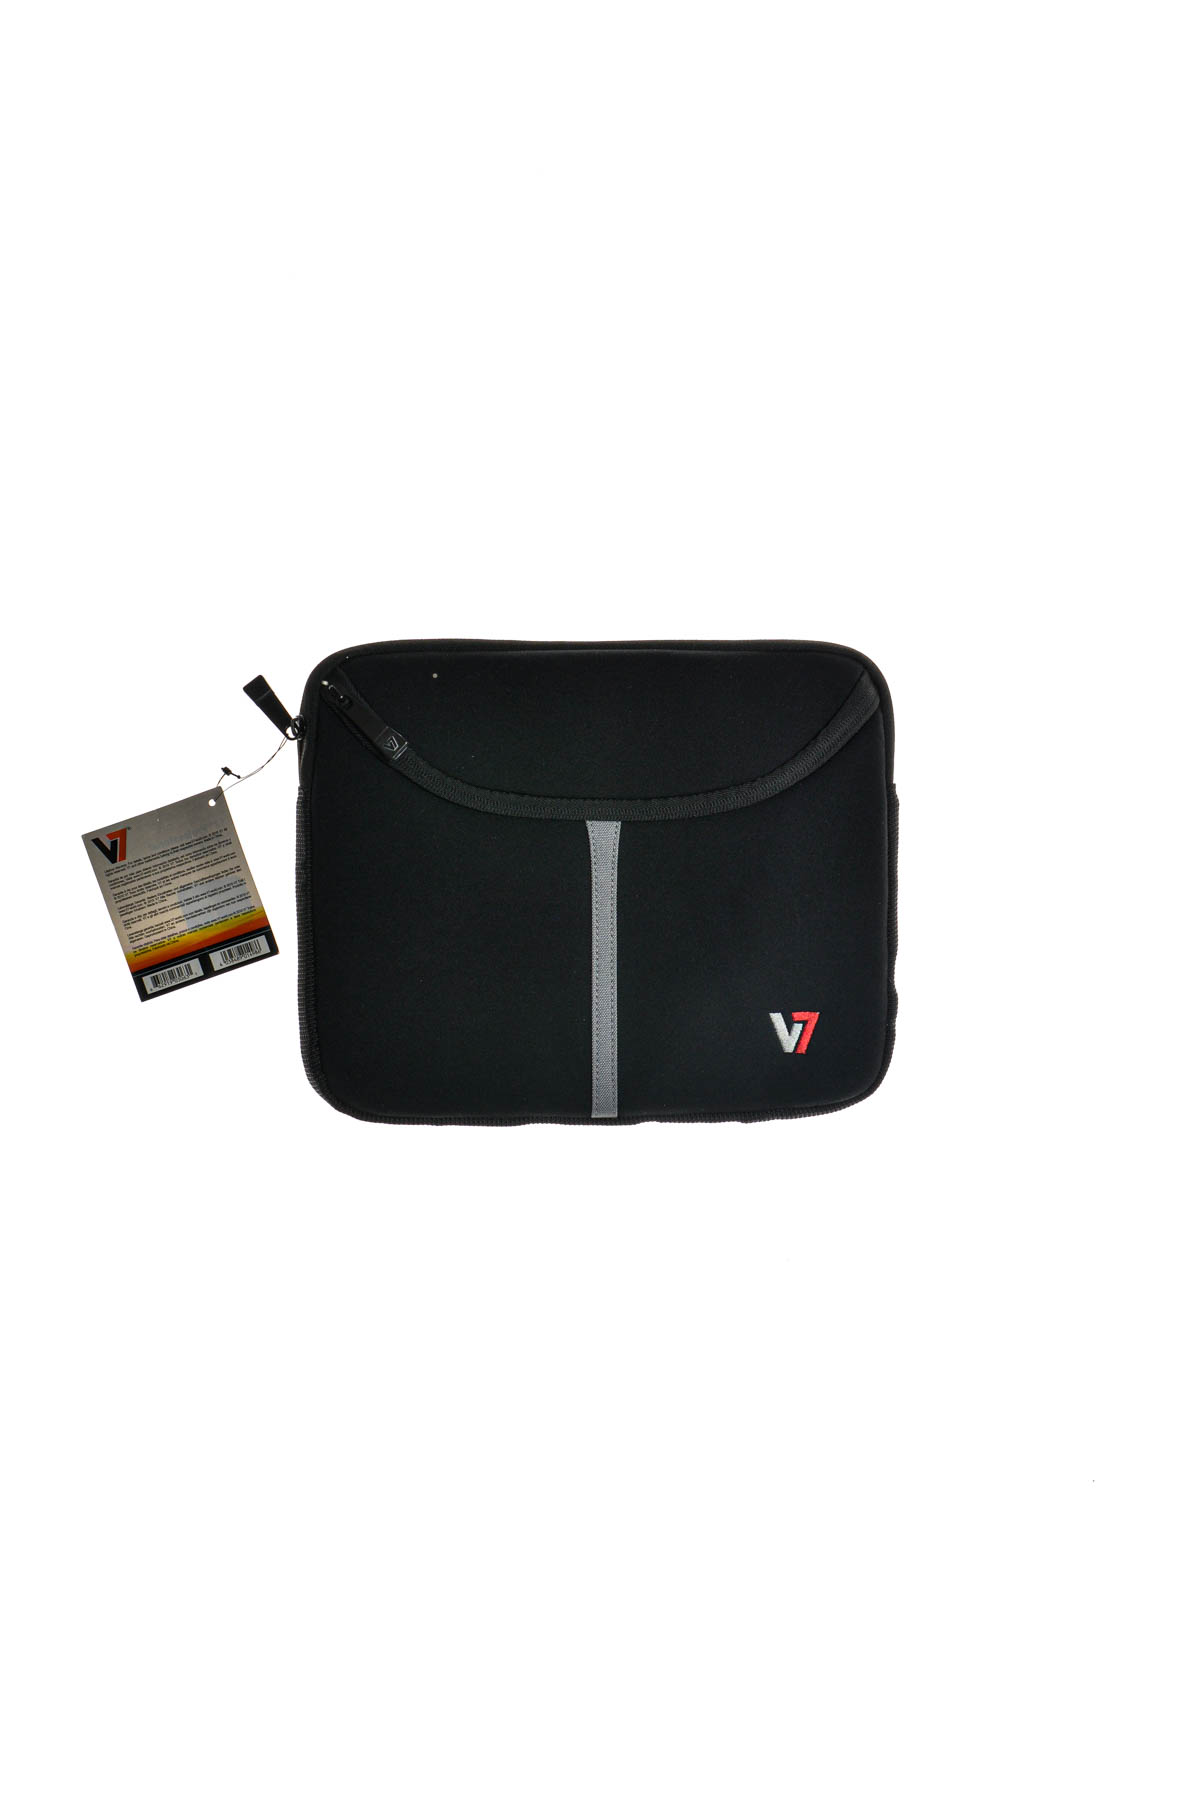 Τσάντα για φορητό υπολογιστή - V7 - 0